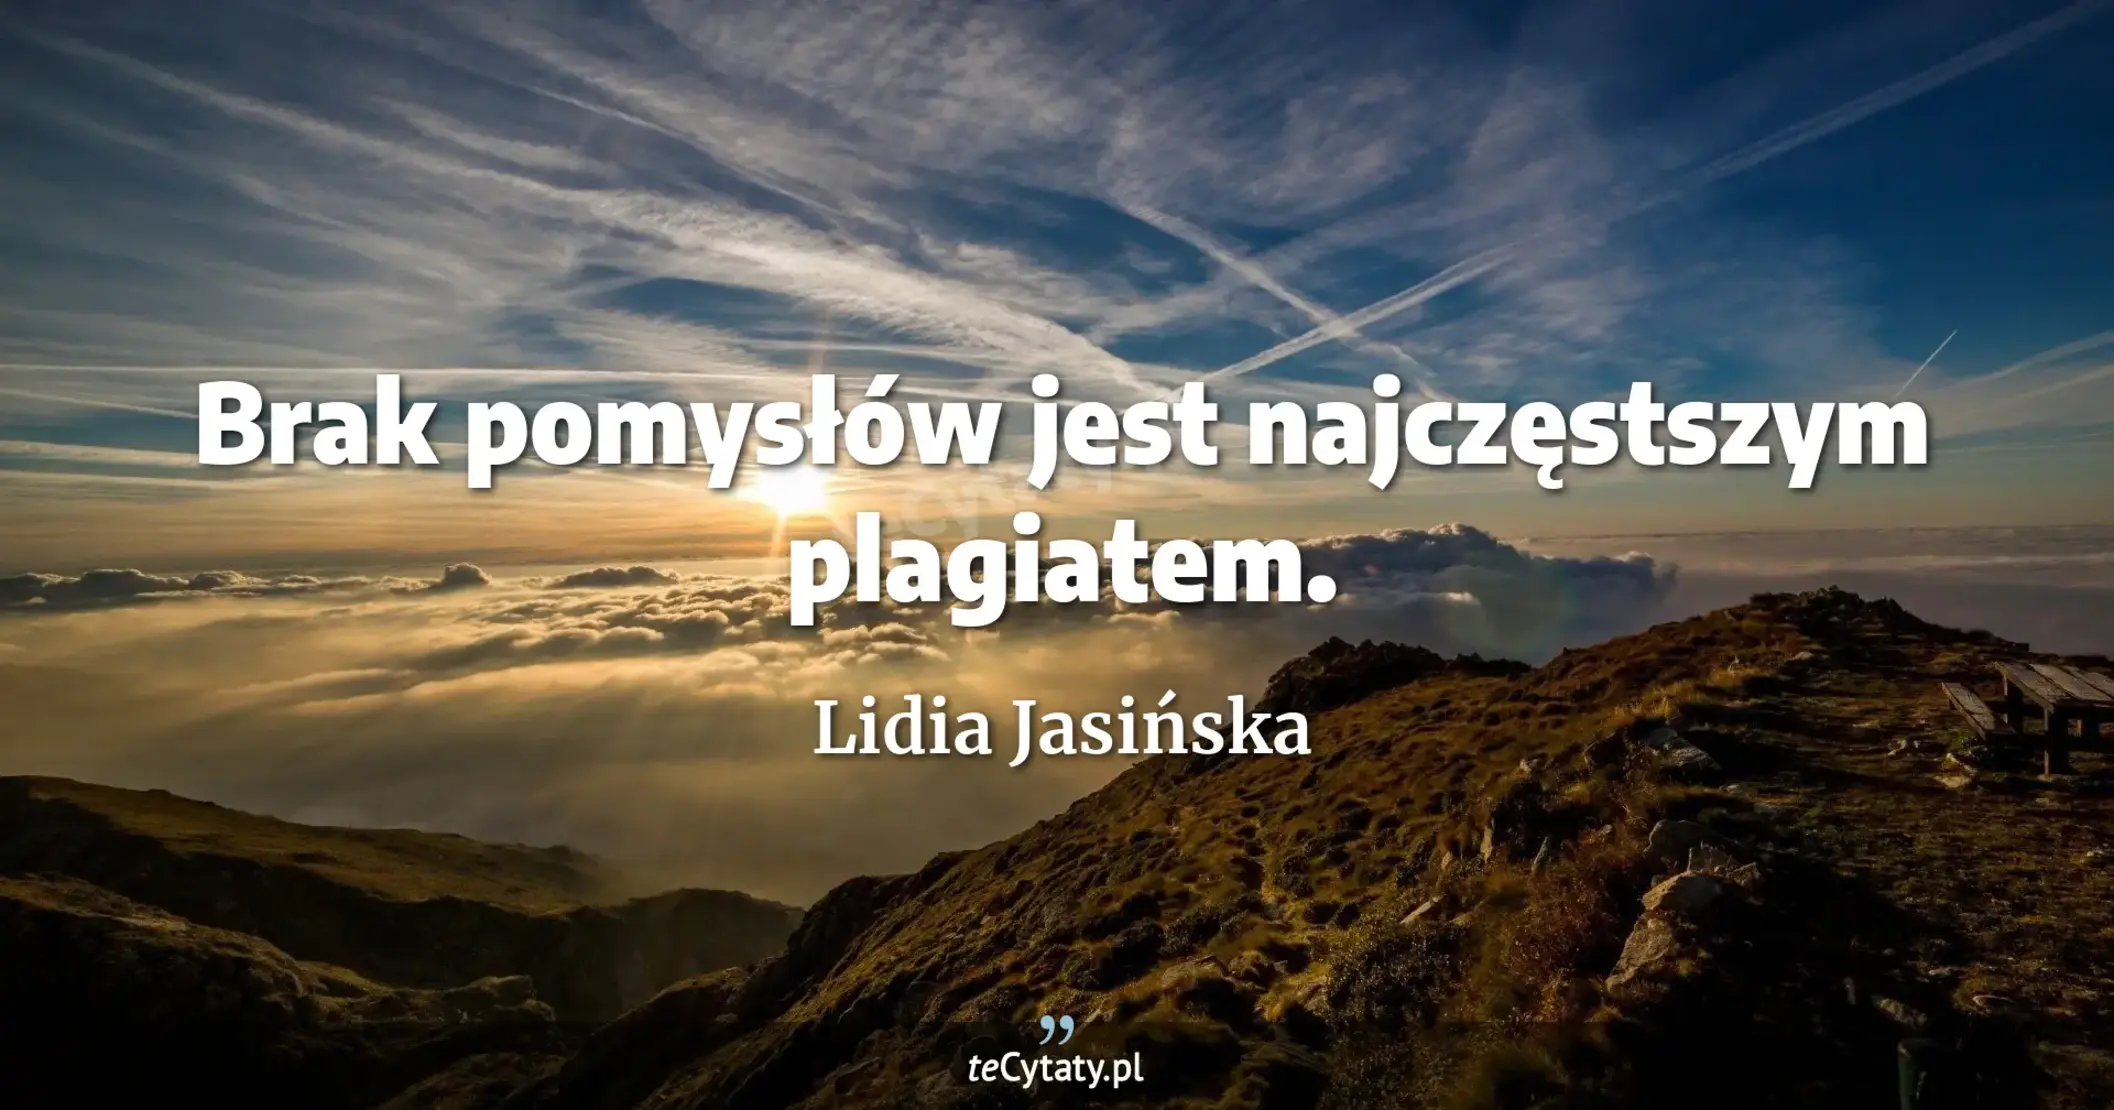 Brak pomysłów jest najczęstszym plagiatem. - Lidia Jasińska